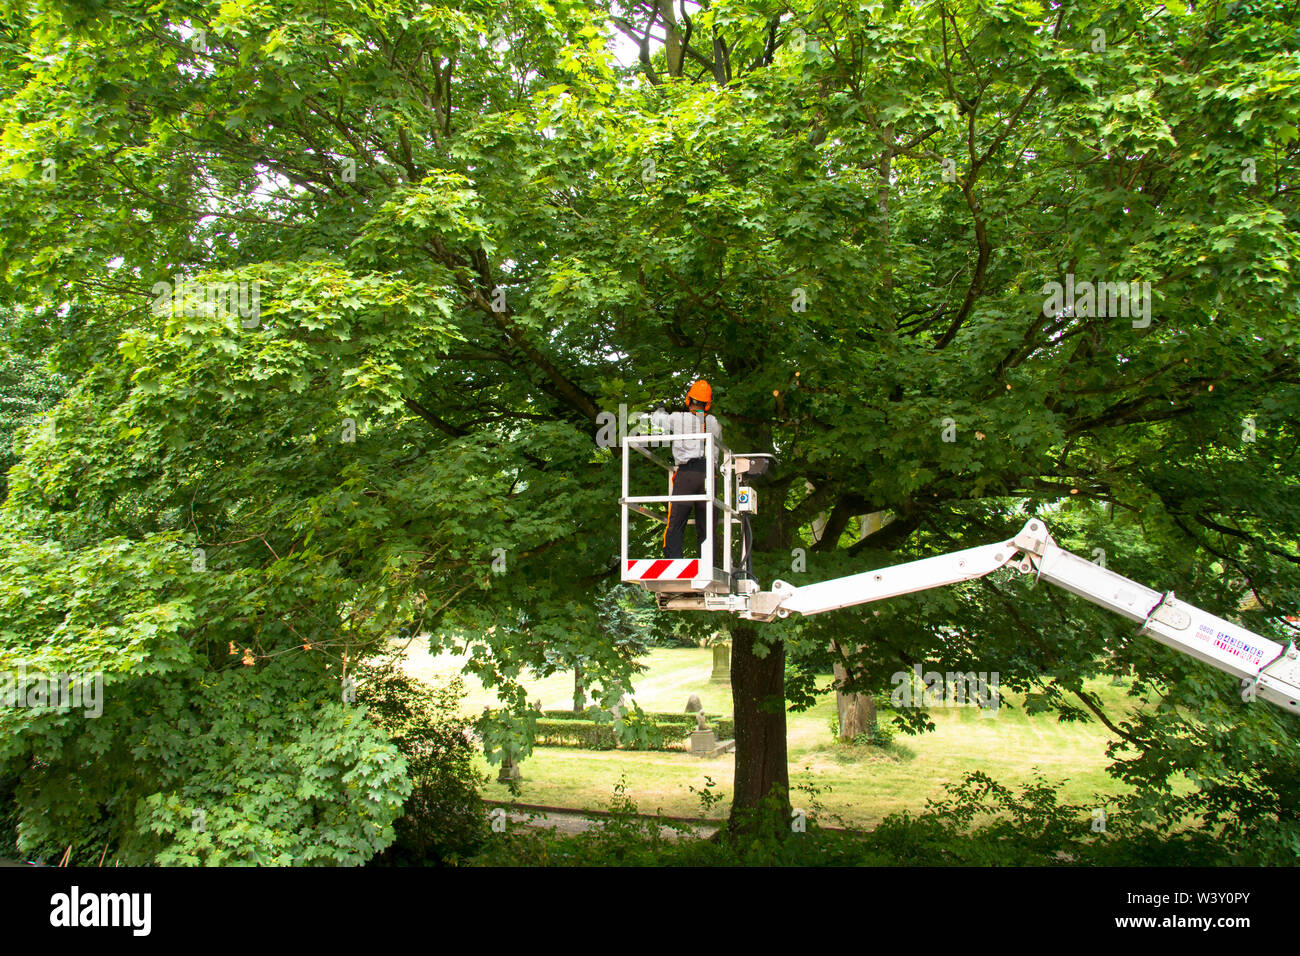 Baumpflege Service auf einem Ahorn in Wetter an der Ruhr, Deutschland. Baumpflegearbeiten ein einem Ahorn in Wetter an der Ruhr, Deutschland. Stockfoto